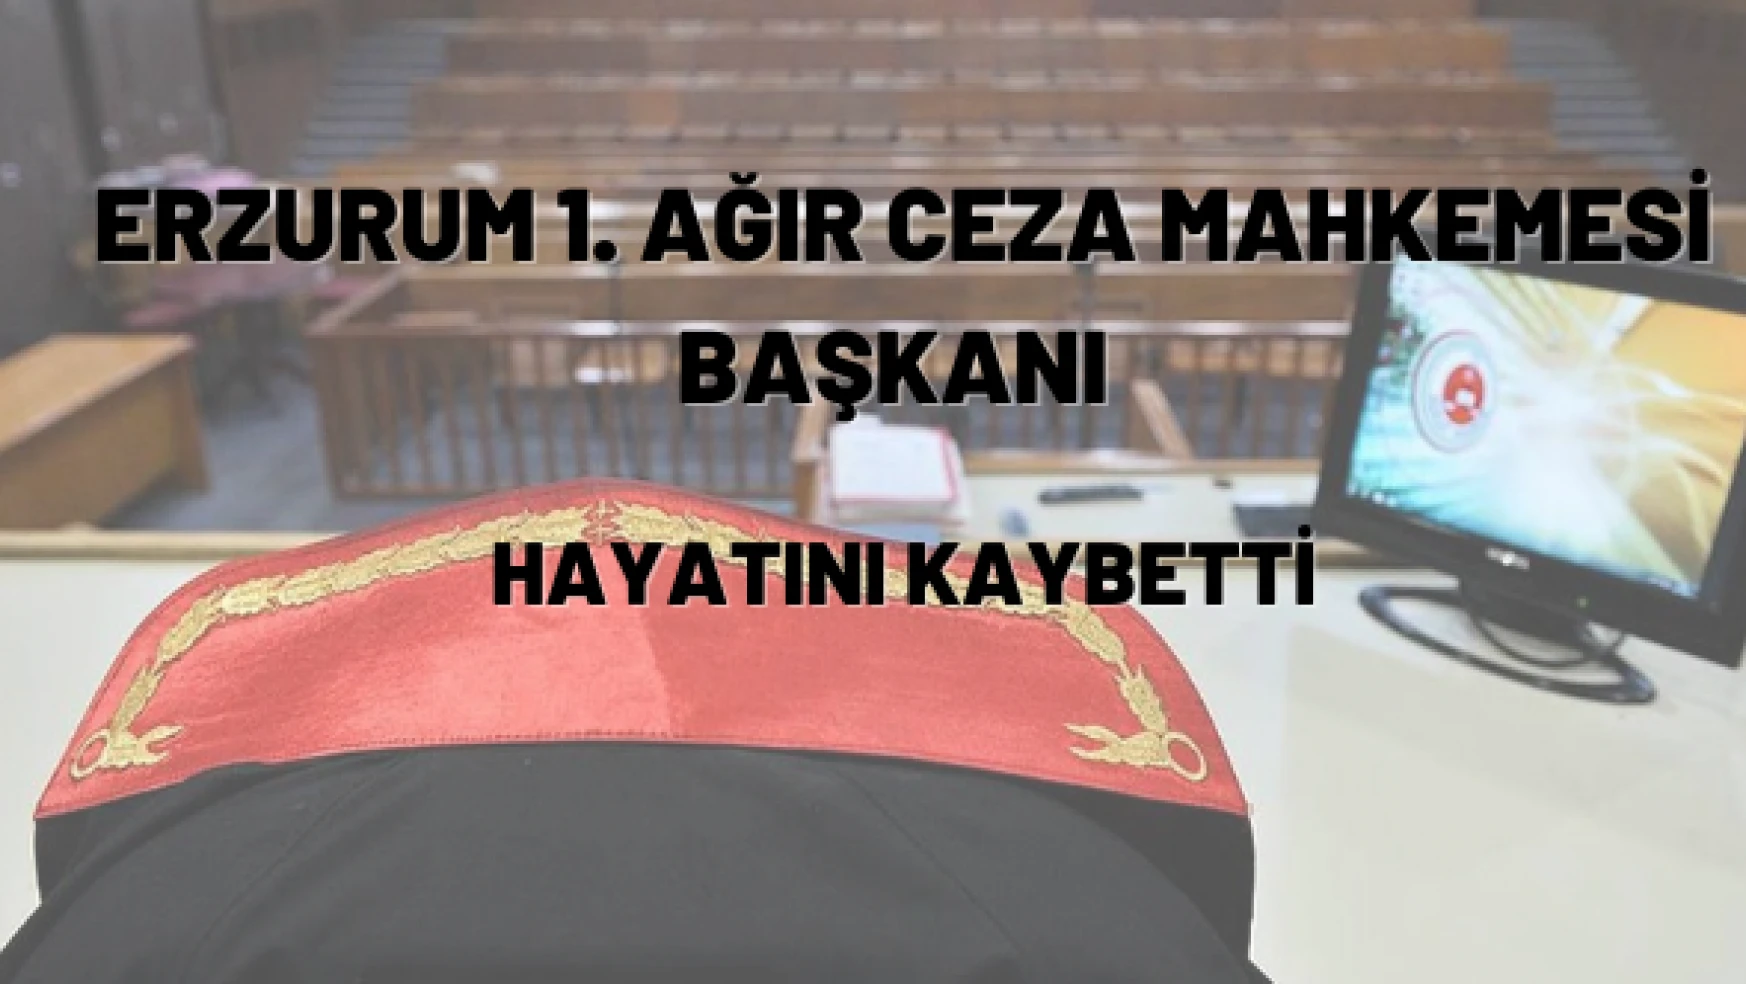 Erzurum 1. Ağır Ceza Mahkemesi Başkanı hayatını kaybetti